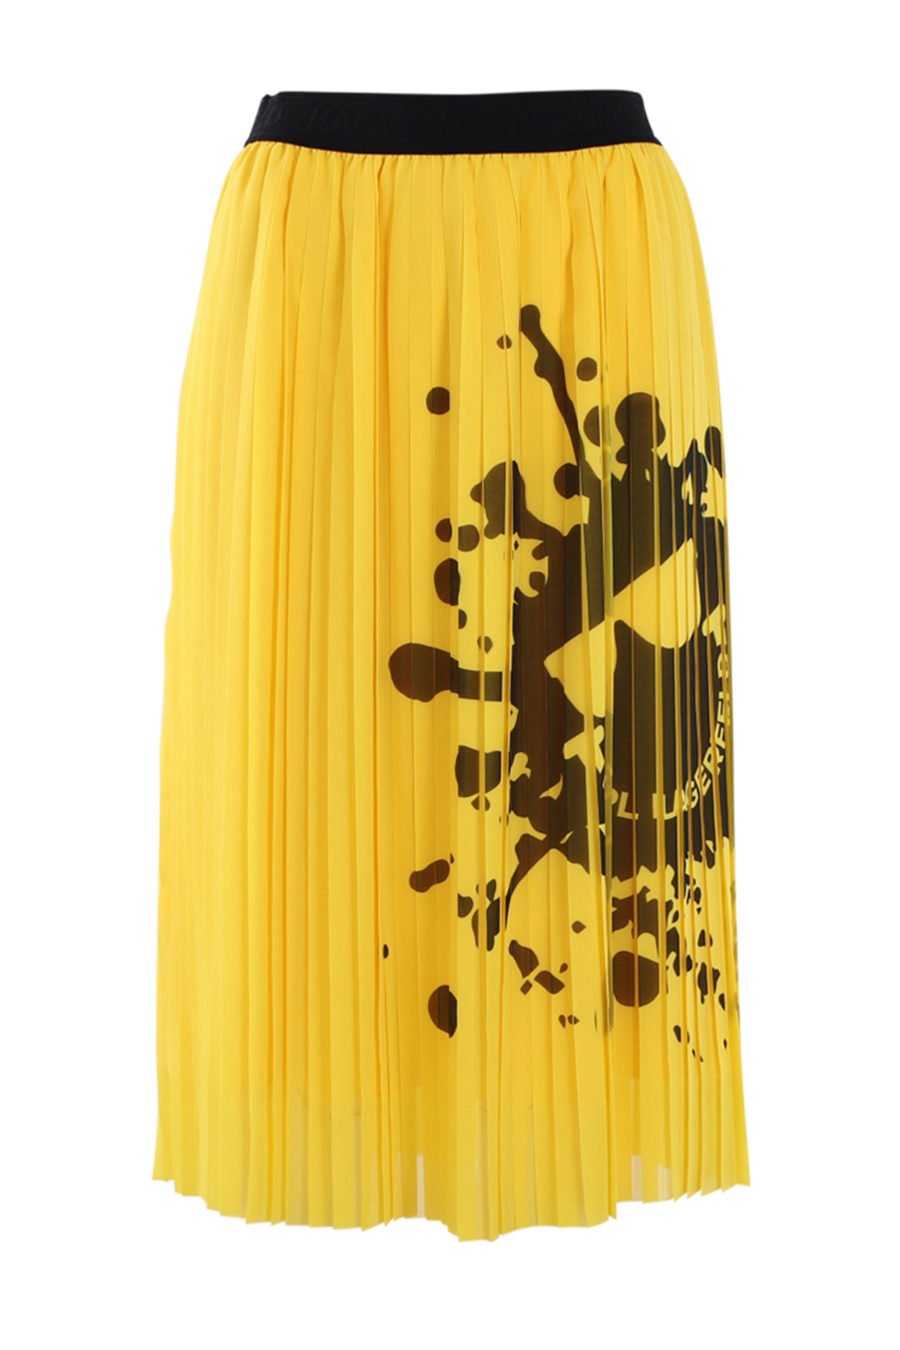 Falda amarilla con logo "smiley" - IMG 0546